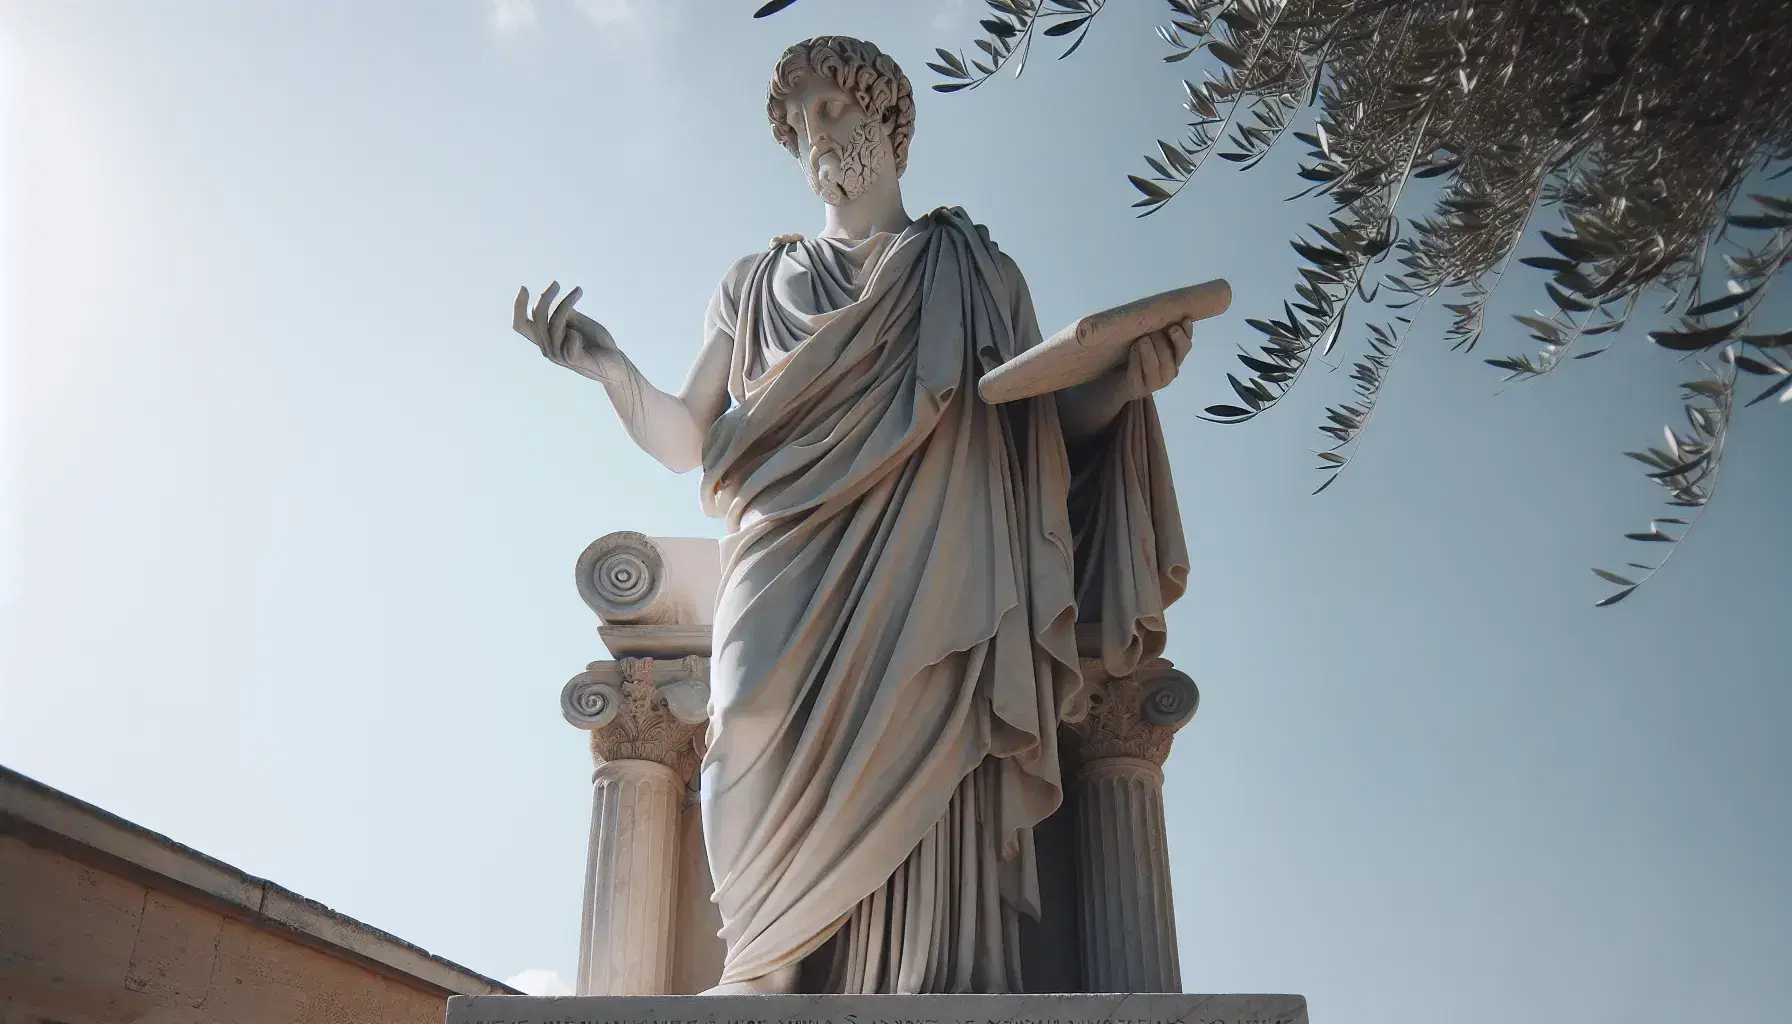 Escultura de mármol blanco de filósofo griego antiguo al aire libre, con túnica y rollo en mano, bajo cielo azul y ramas de olivo.